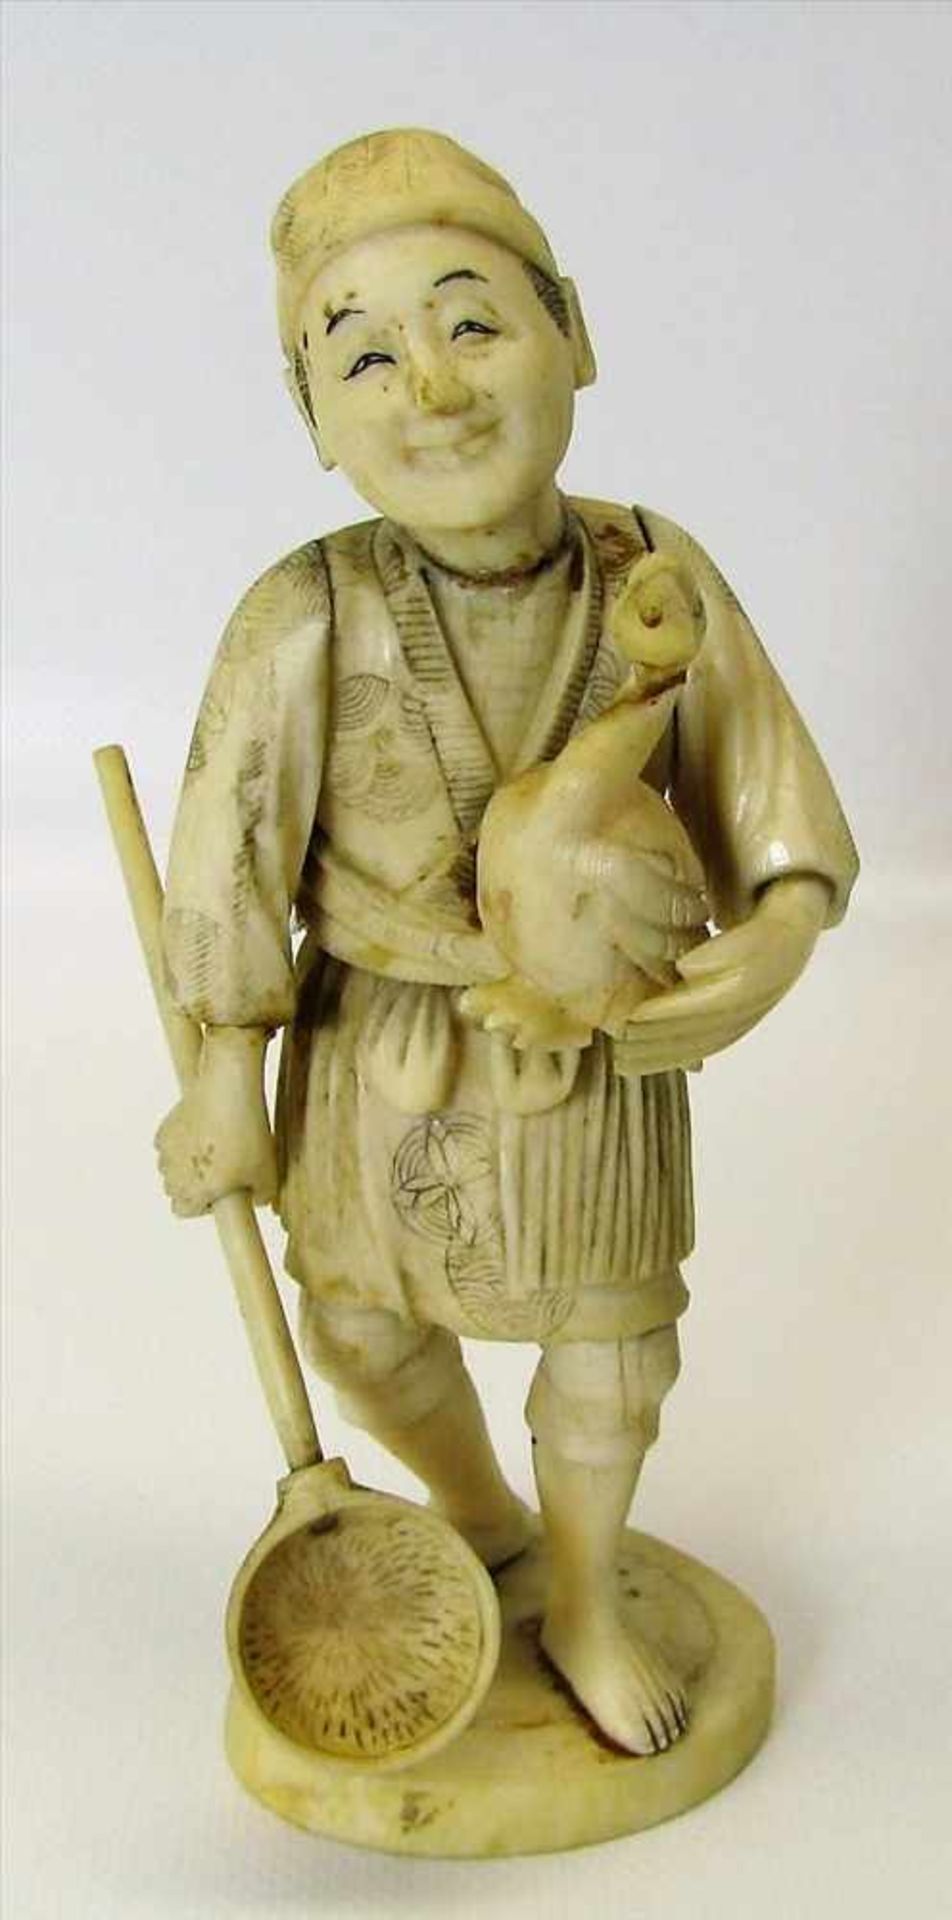 China, 19. Jahrhundert, Bauer mit Vogel und Fangnetz, Elfenbein beschnitzt, sign., h 17 cm, d 7 cm.